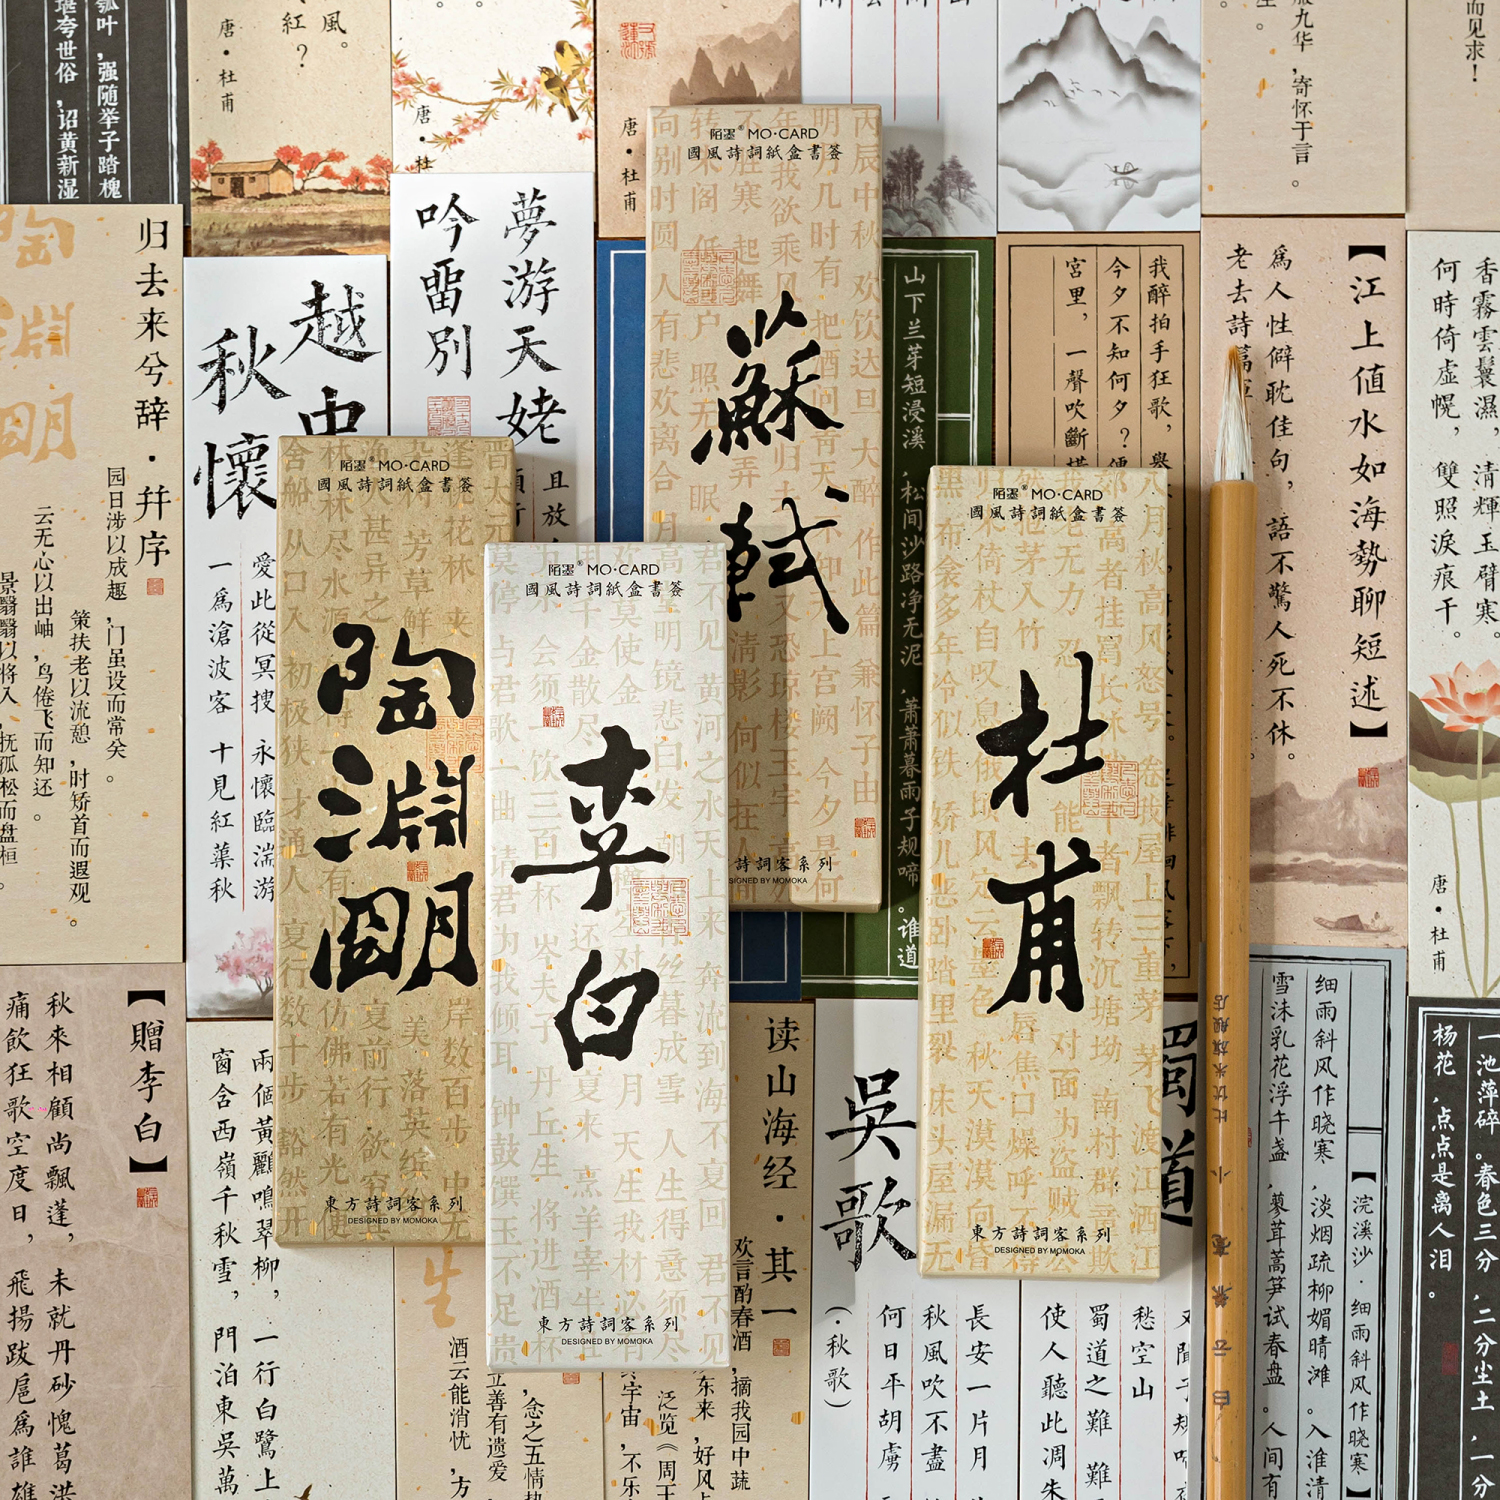 古风诗词书签 30张中国风文艺书法书笺淡雅文字装饰小卡片书页夹